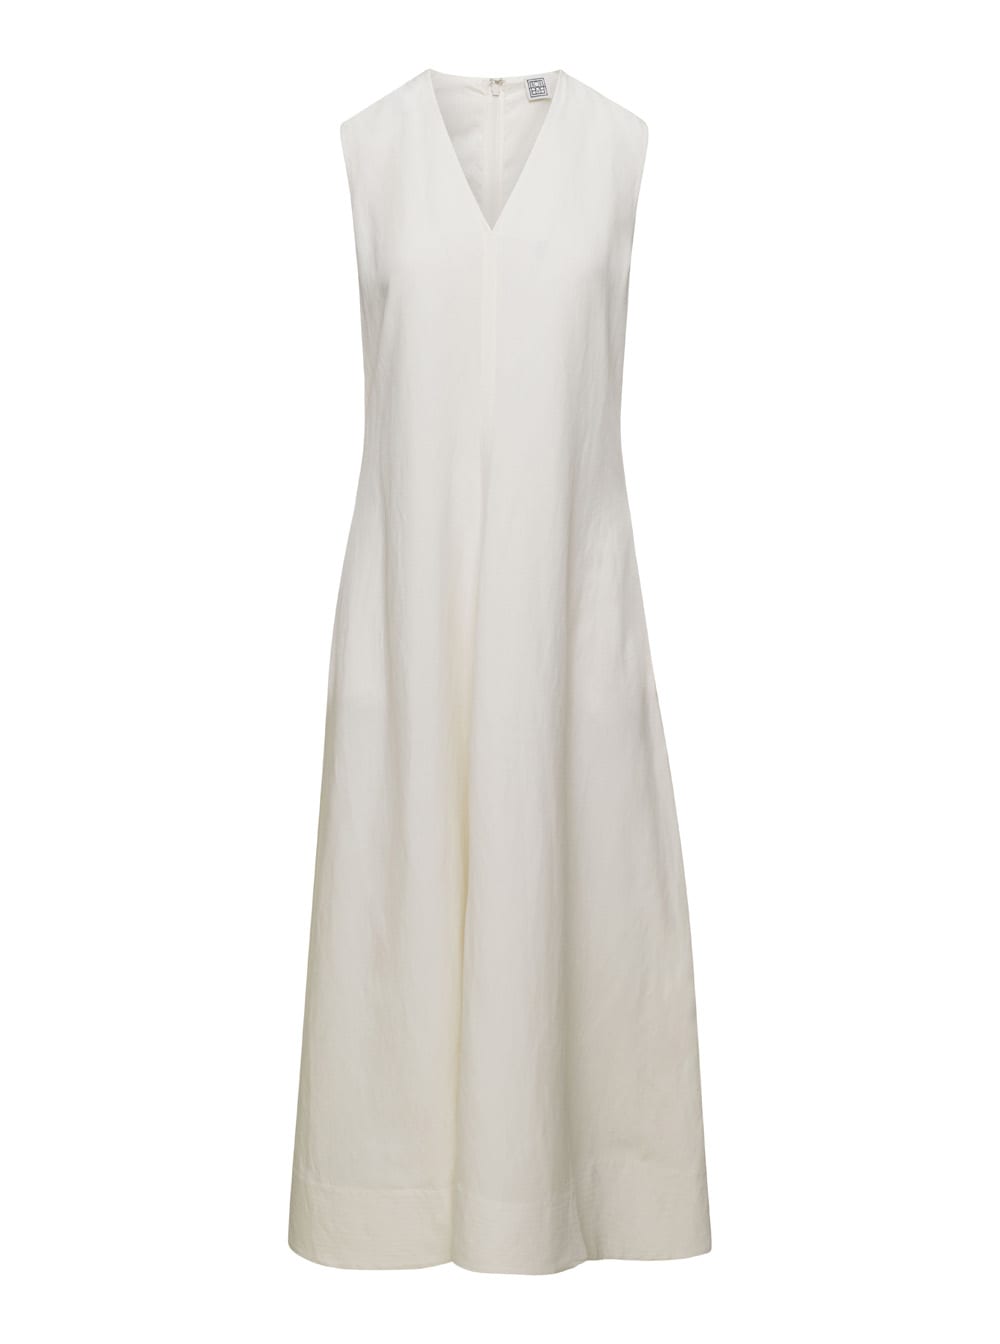 Totême White V-neck Flared Dress In Linen Blend Woman